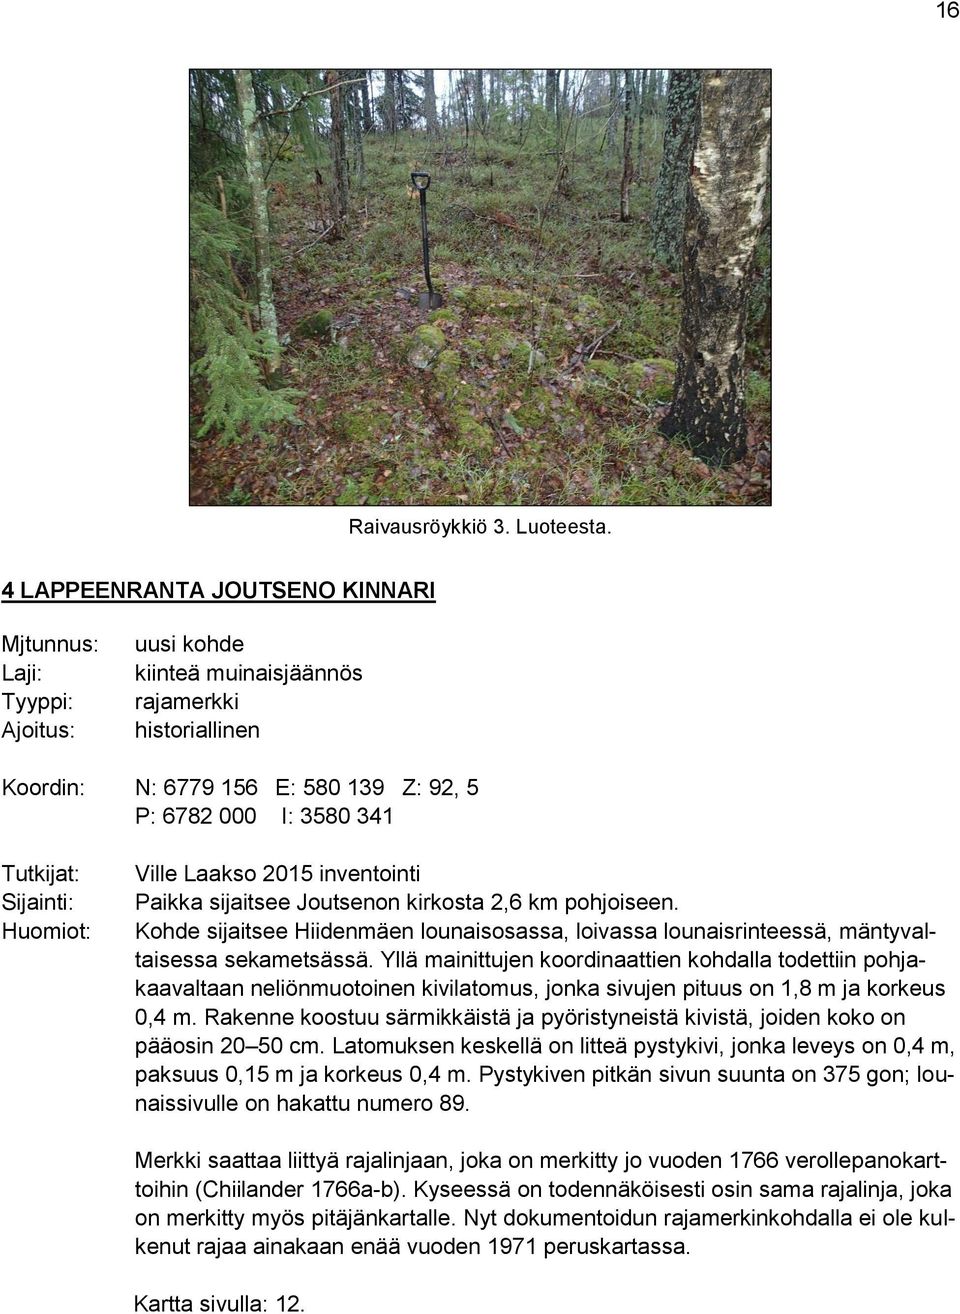 Sijainti: Huomiot: Ville Laakso 2015 inventointi Paikka sijaitsee Joutsenon kirkosta 2,6 km pohjoiseen.